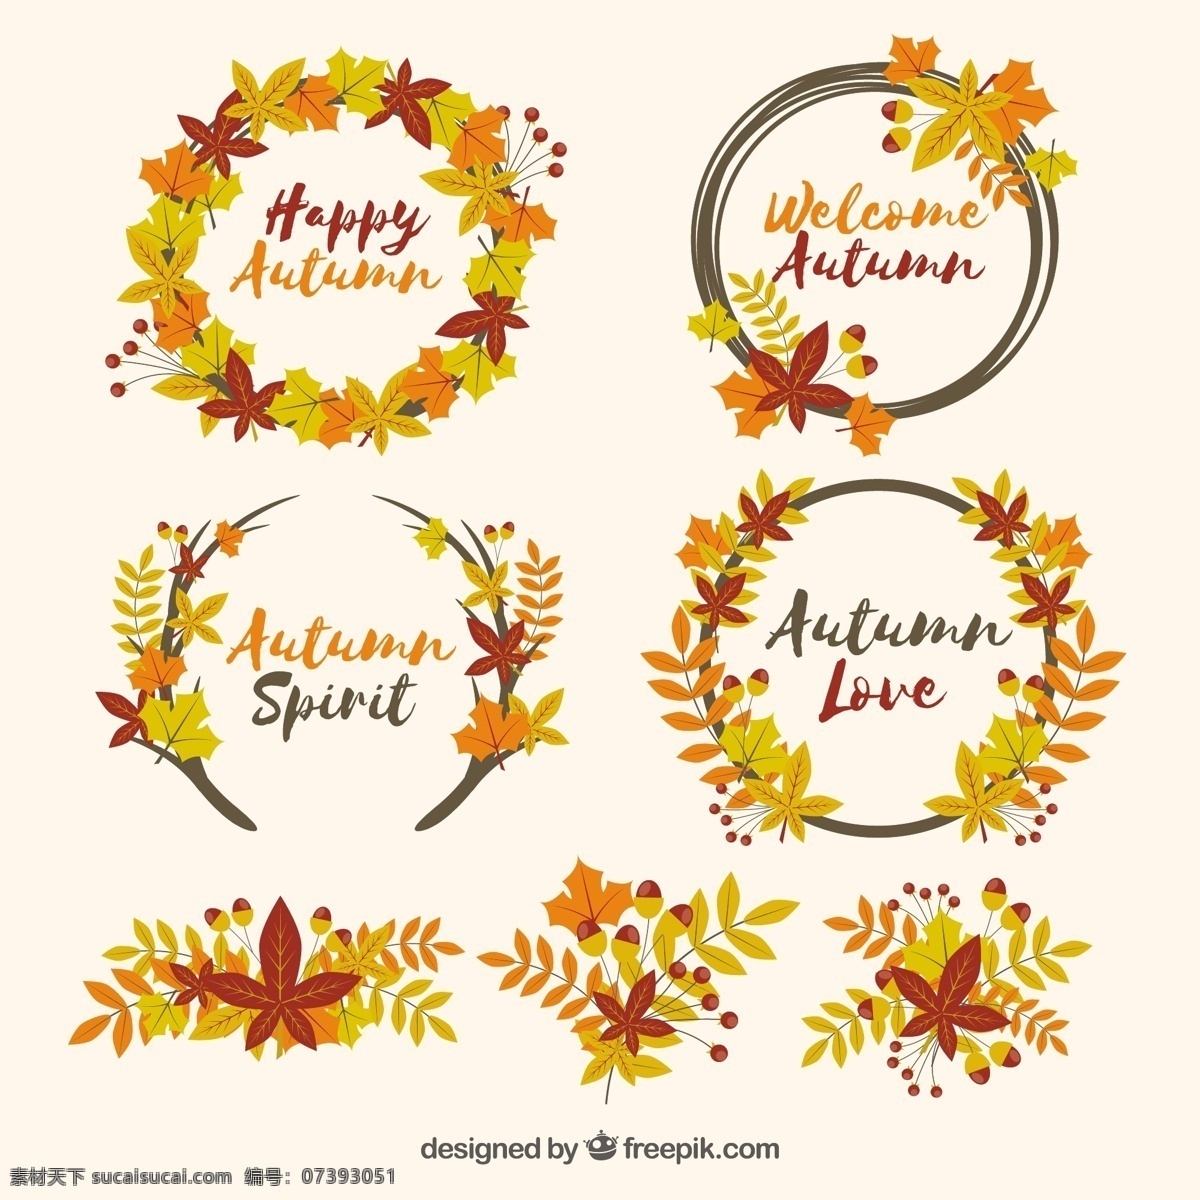 一个 秋天 树叶 花环 赭石色 光谱 鲜花 爱情 大自然 幸福 欢迎 色彩 自然 颜色 温暖 树枝 秋叶 季节 落叶 精神